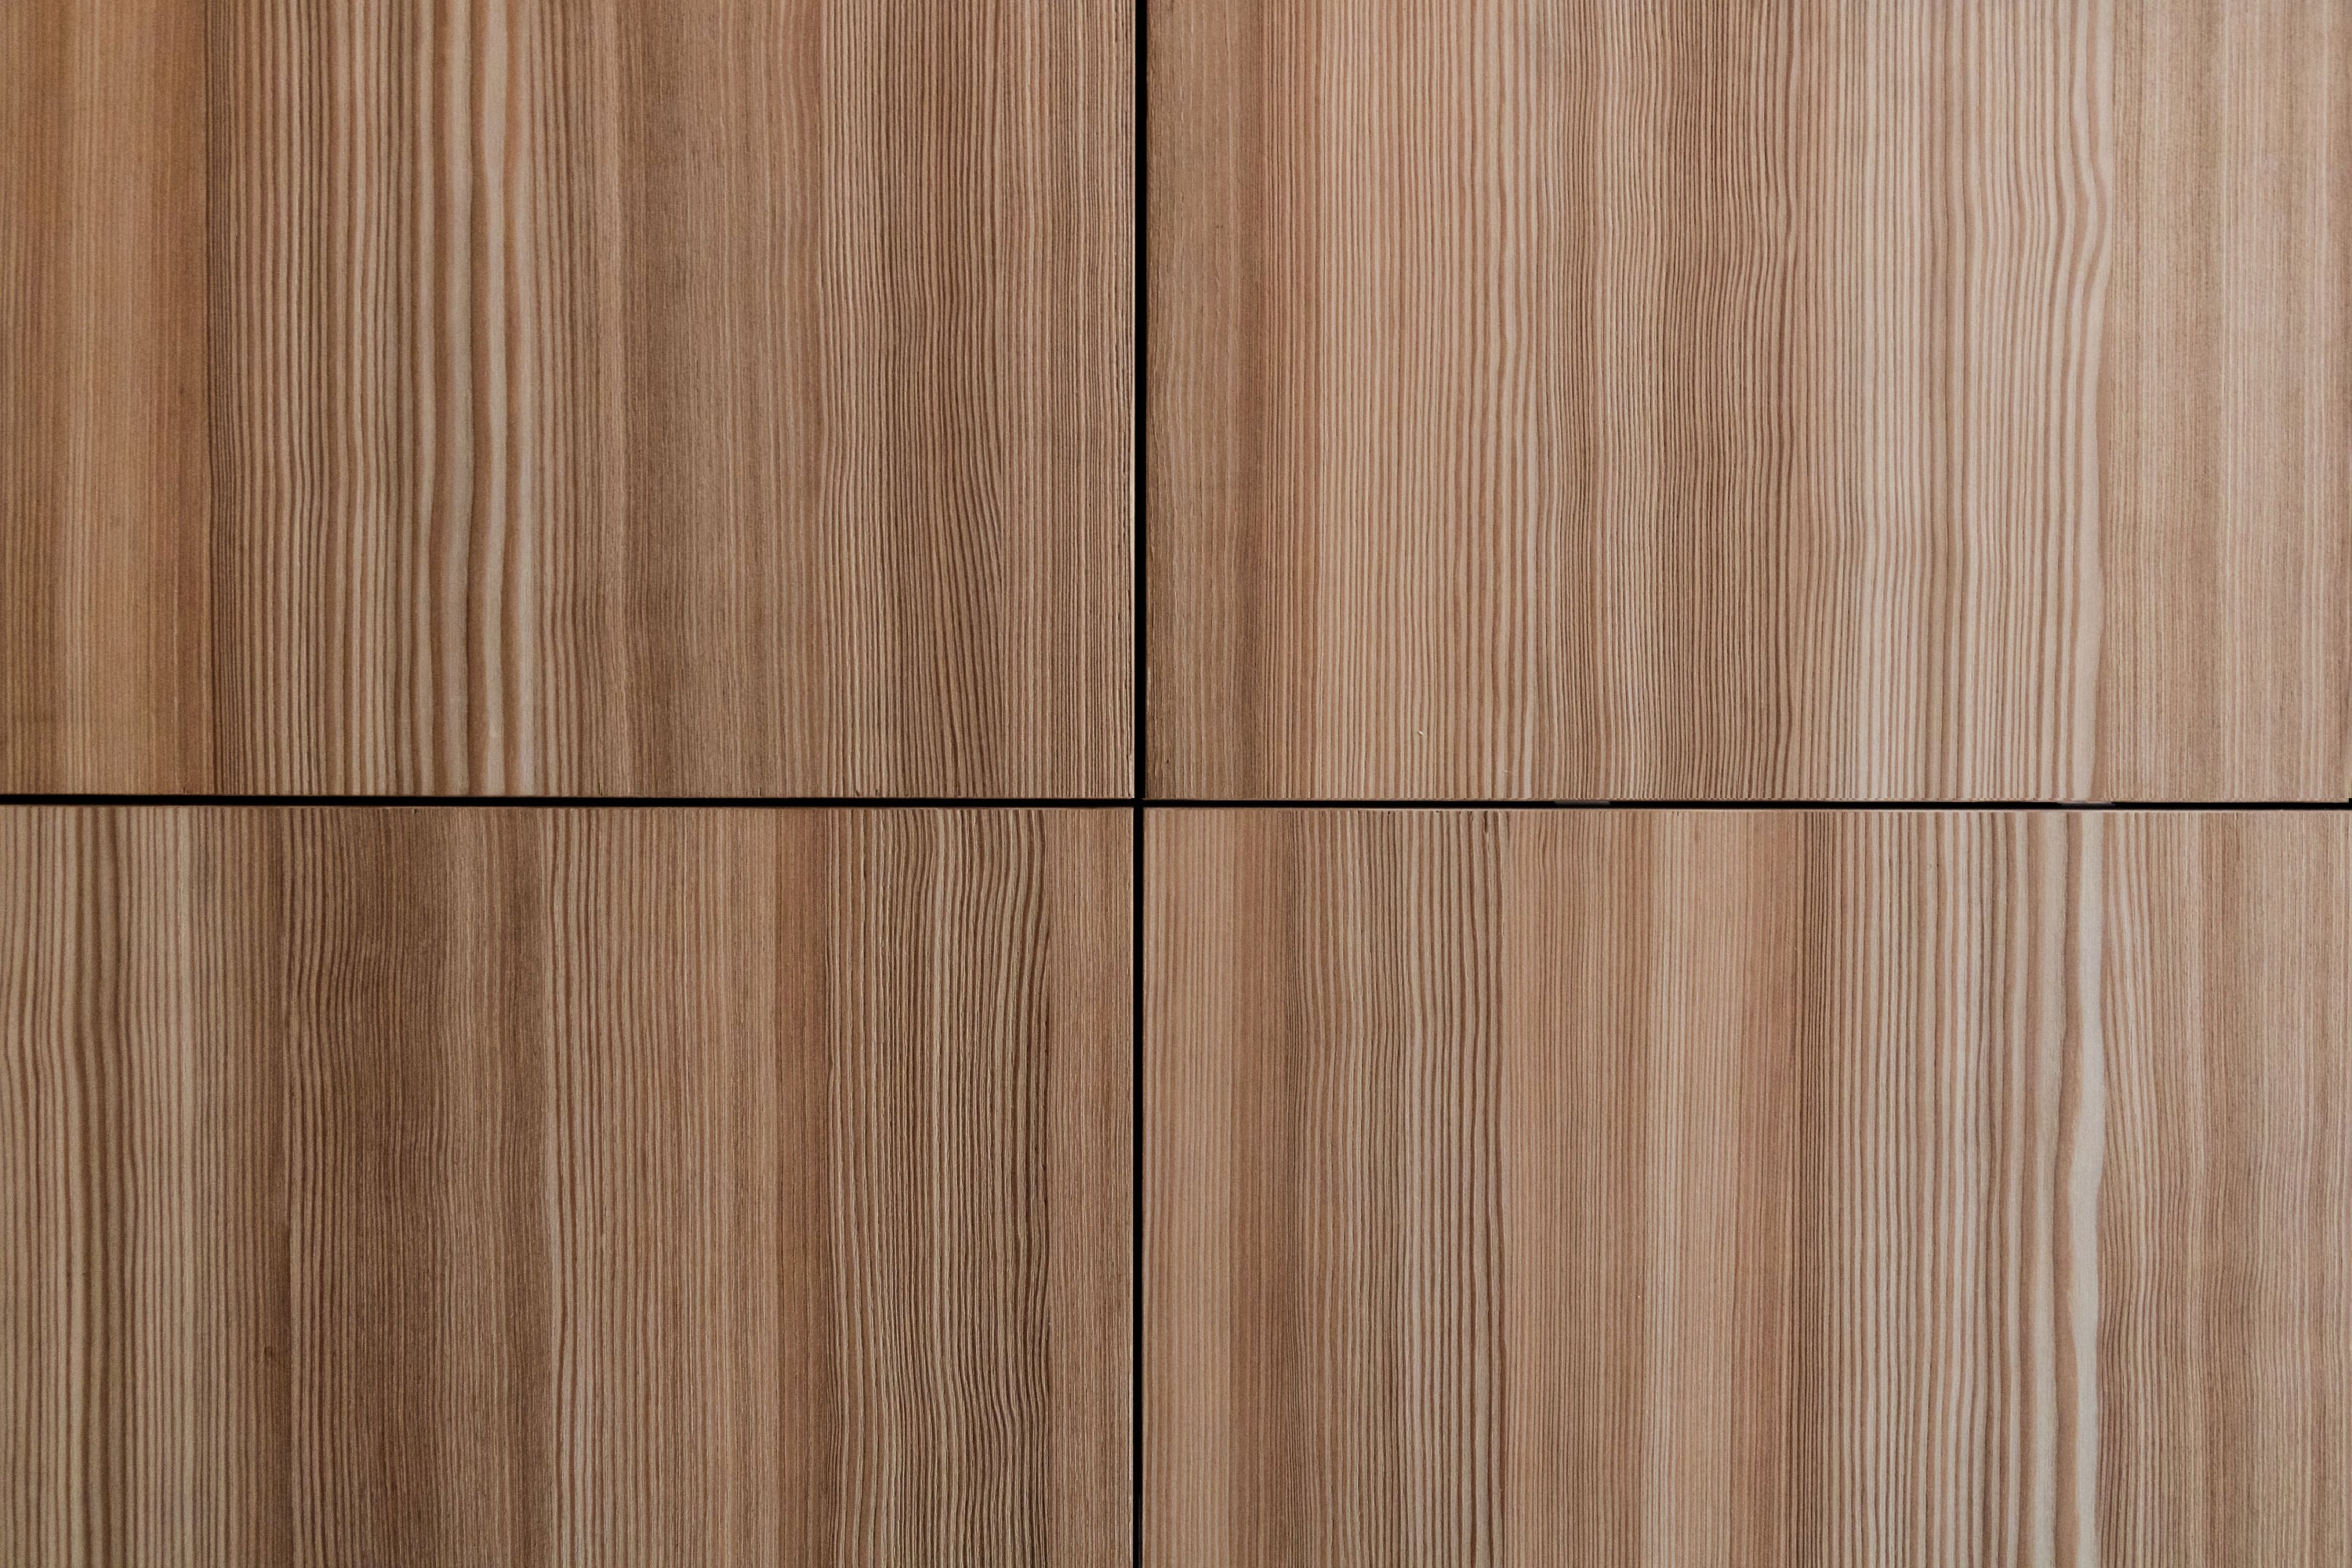 Nordus - nordus spring larch panels - wood veneer - wood veneer kitchen - kitchen - larch kitchen - larch